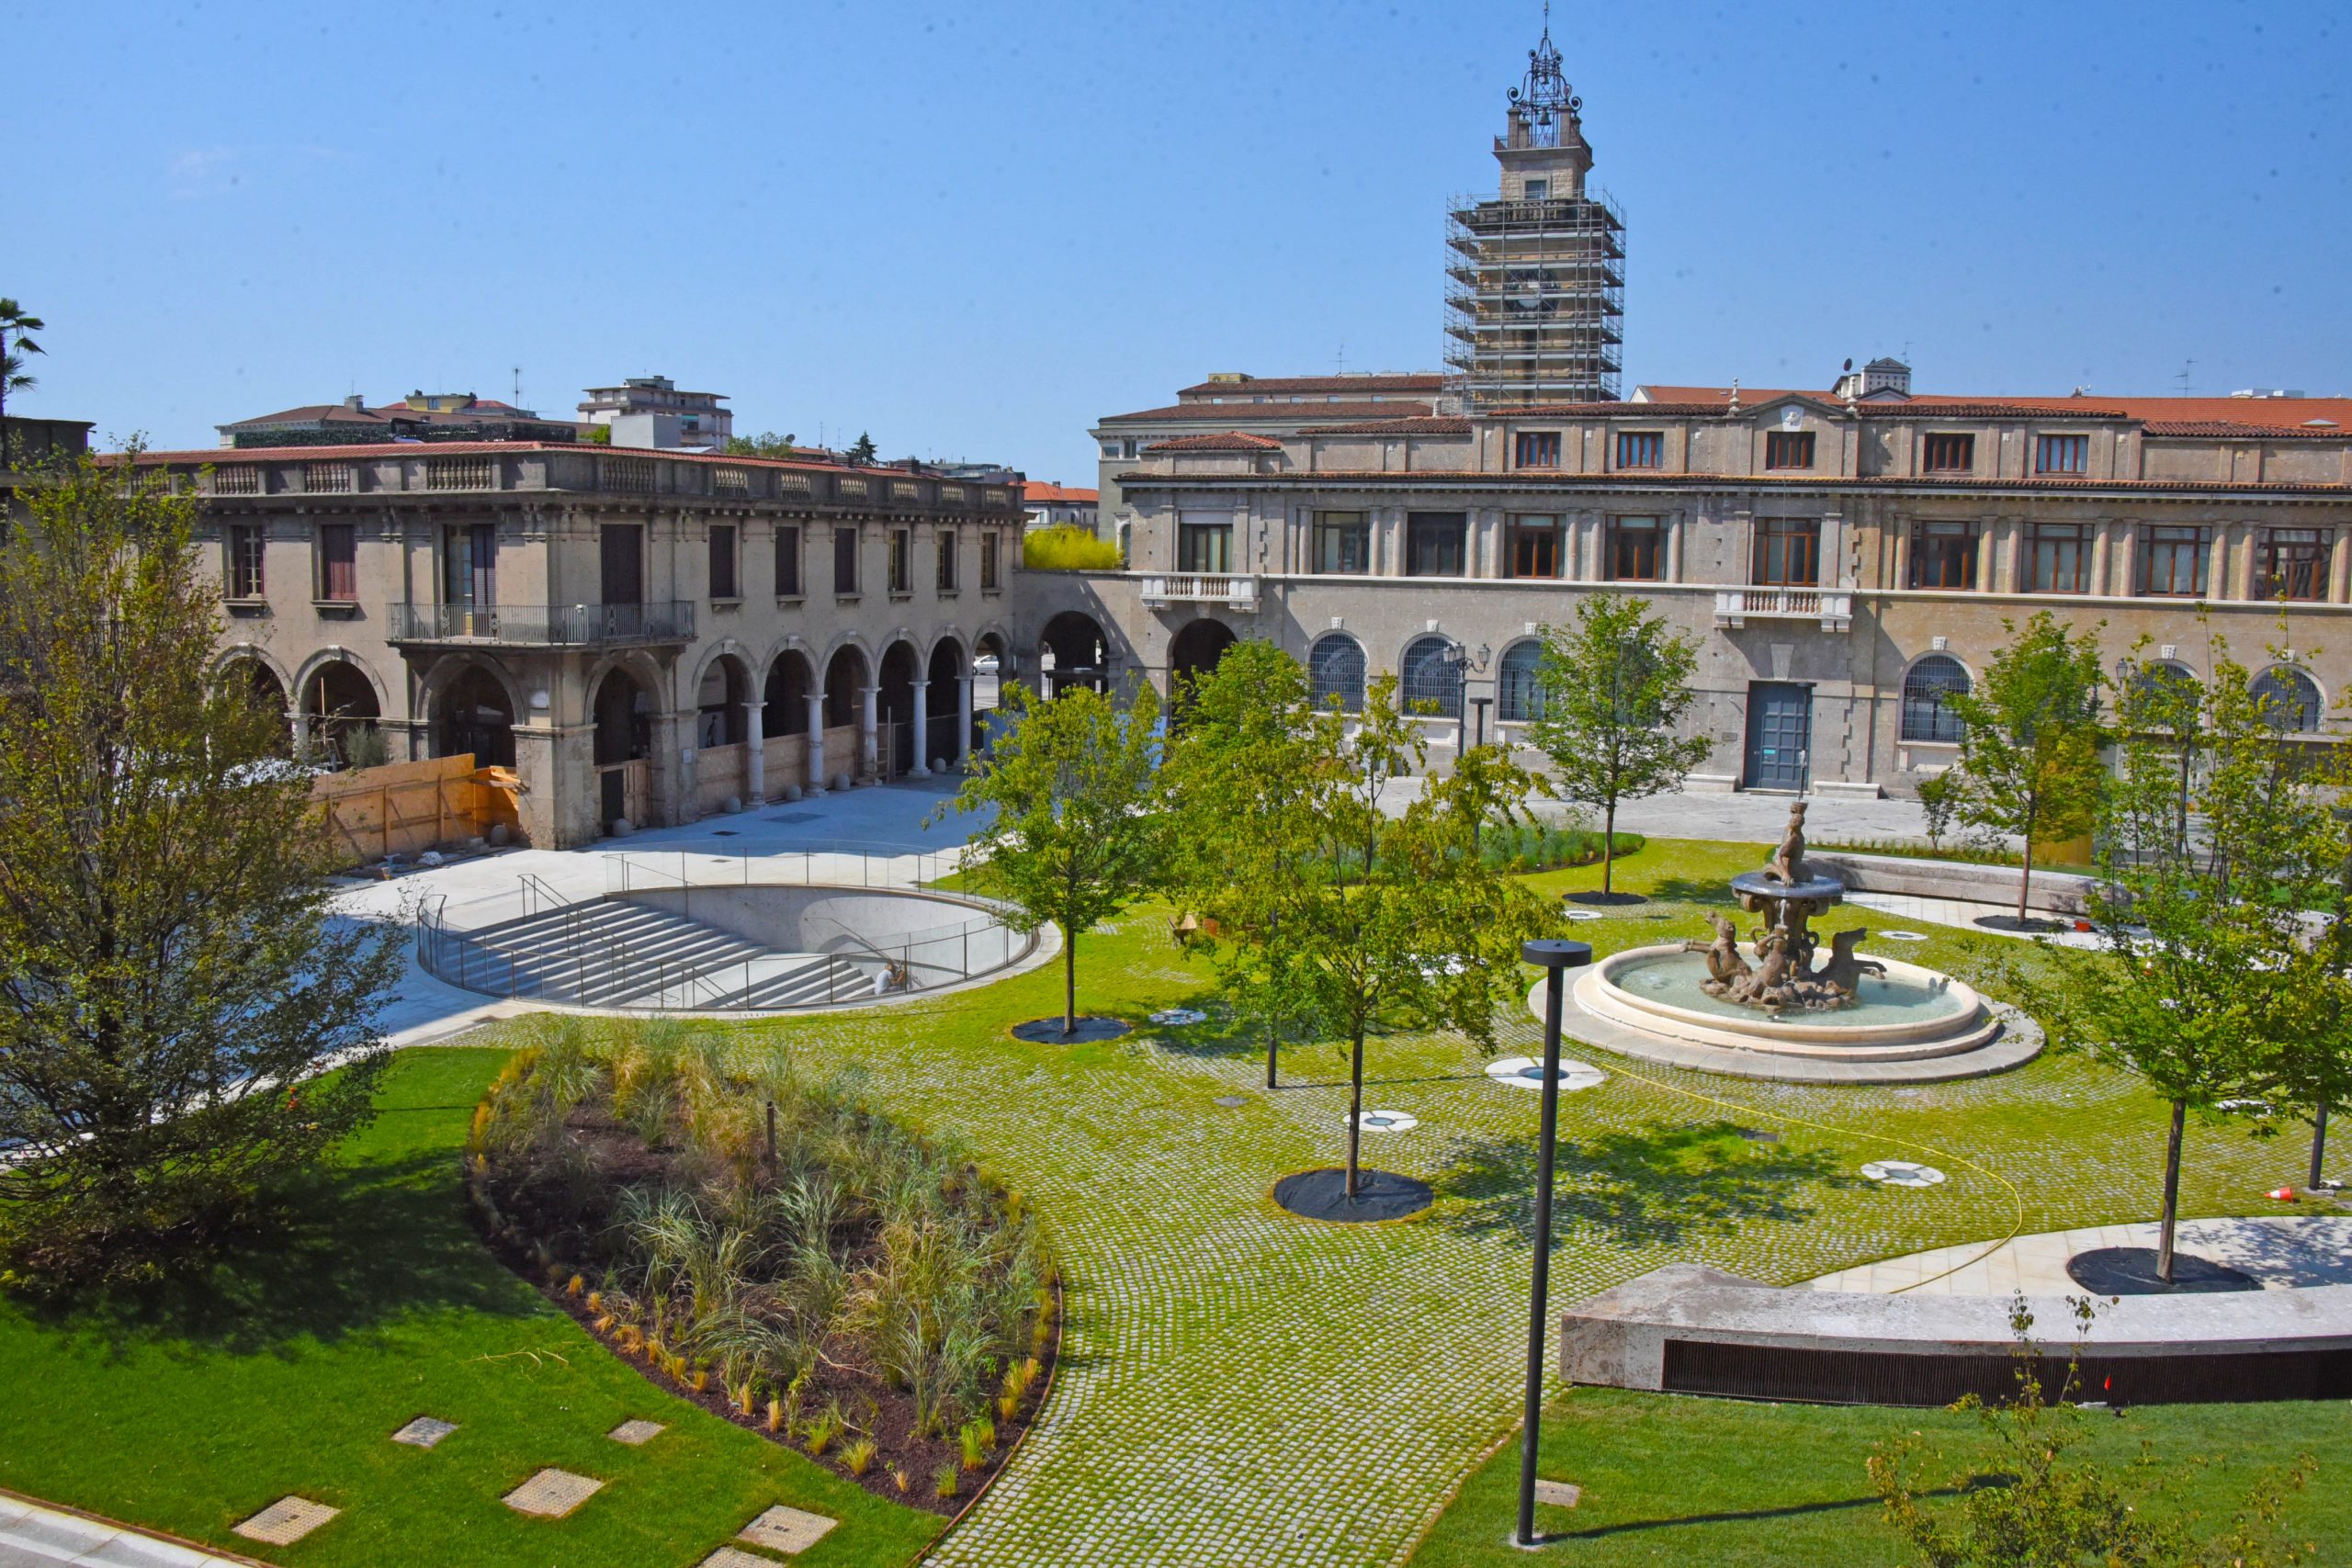 Piazza Dante torna alla città di Bergamo dopo 2 anni di lavori